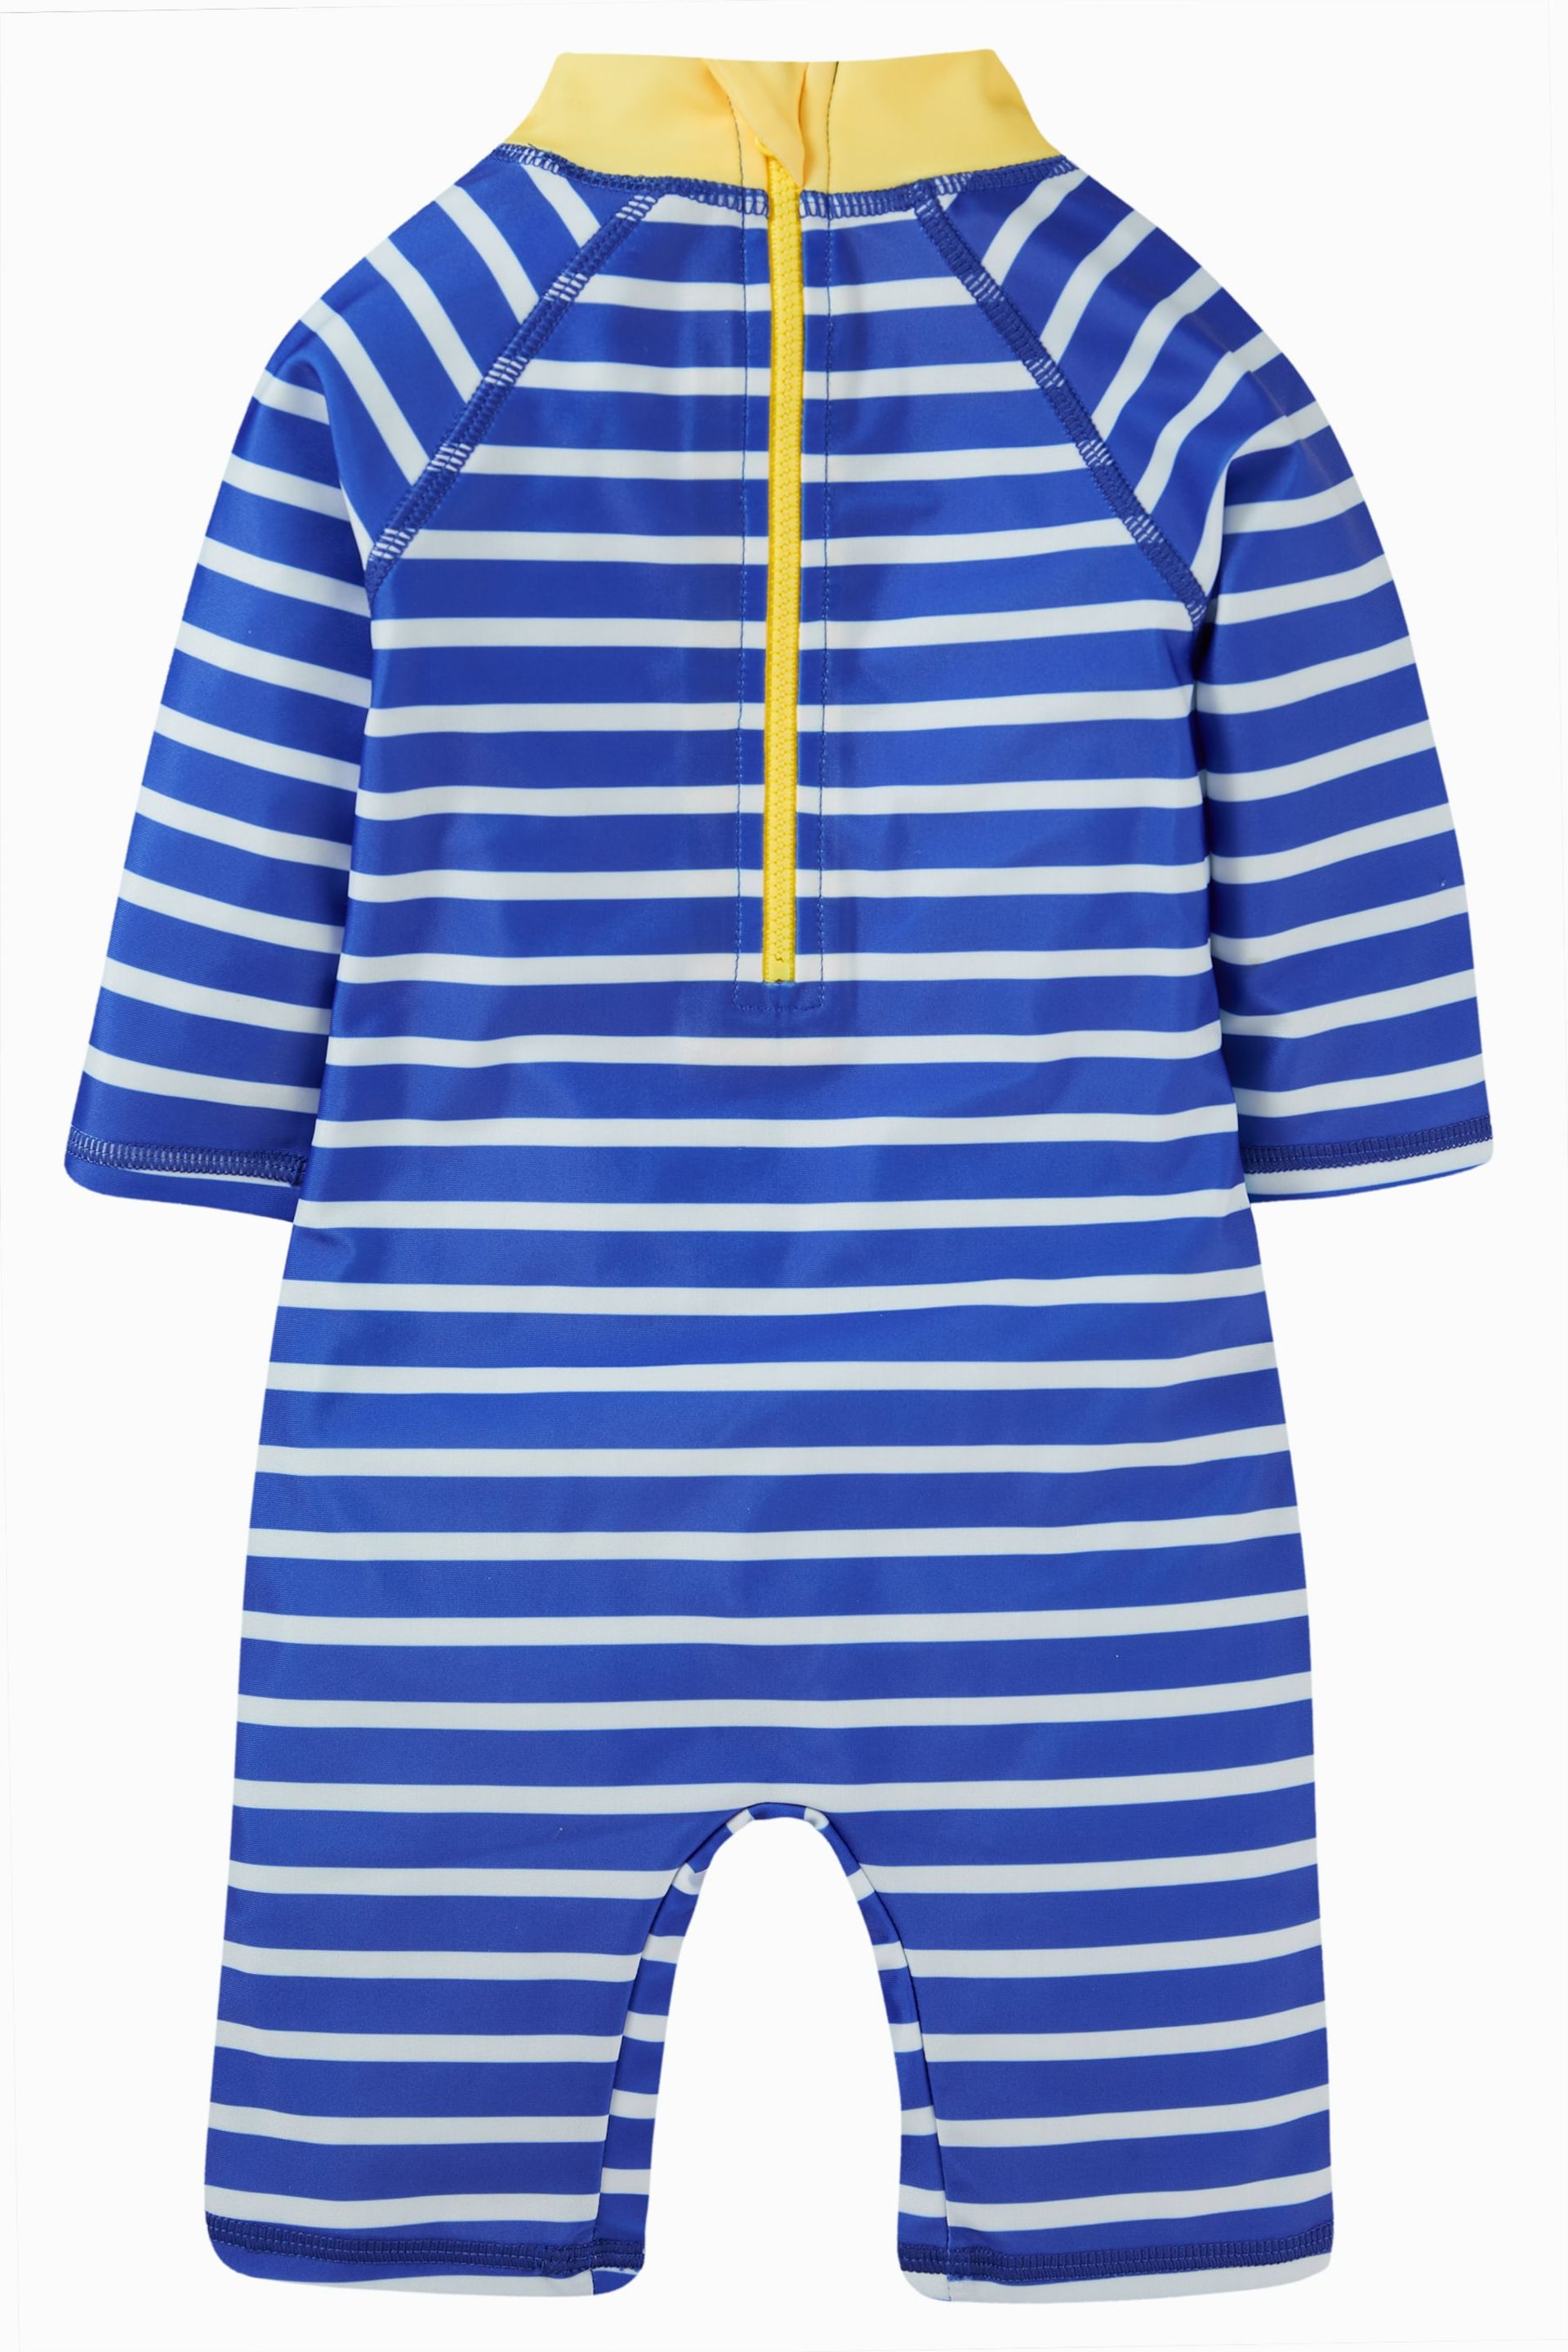 Frugi Blue Stripe Little Sunsafe Suit - Image 3 of 6